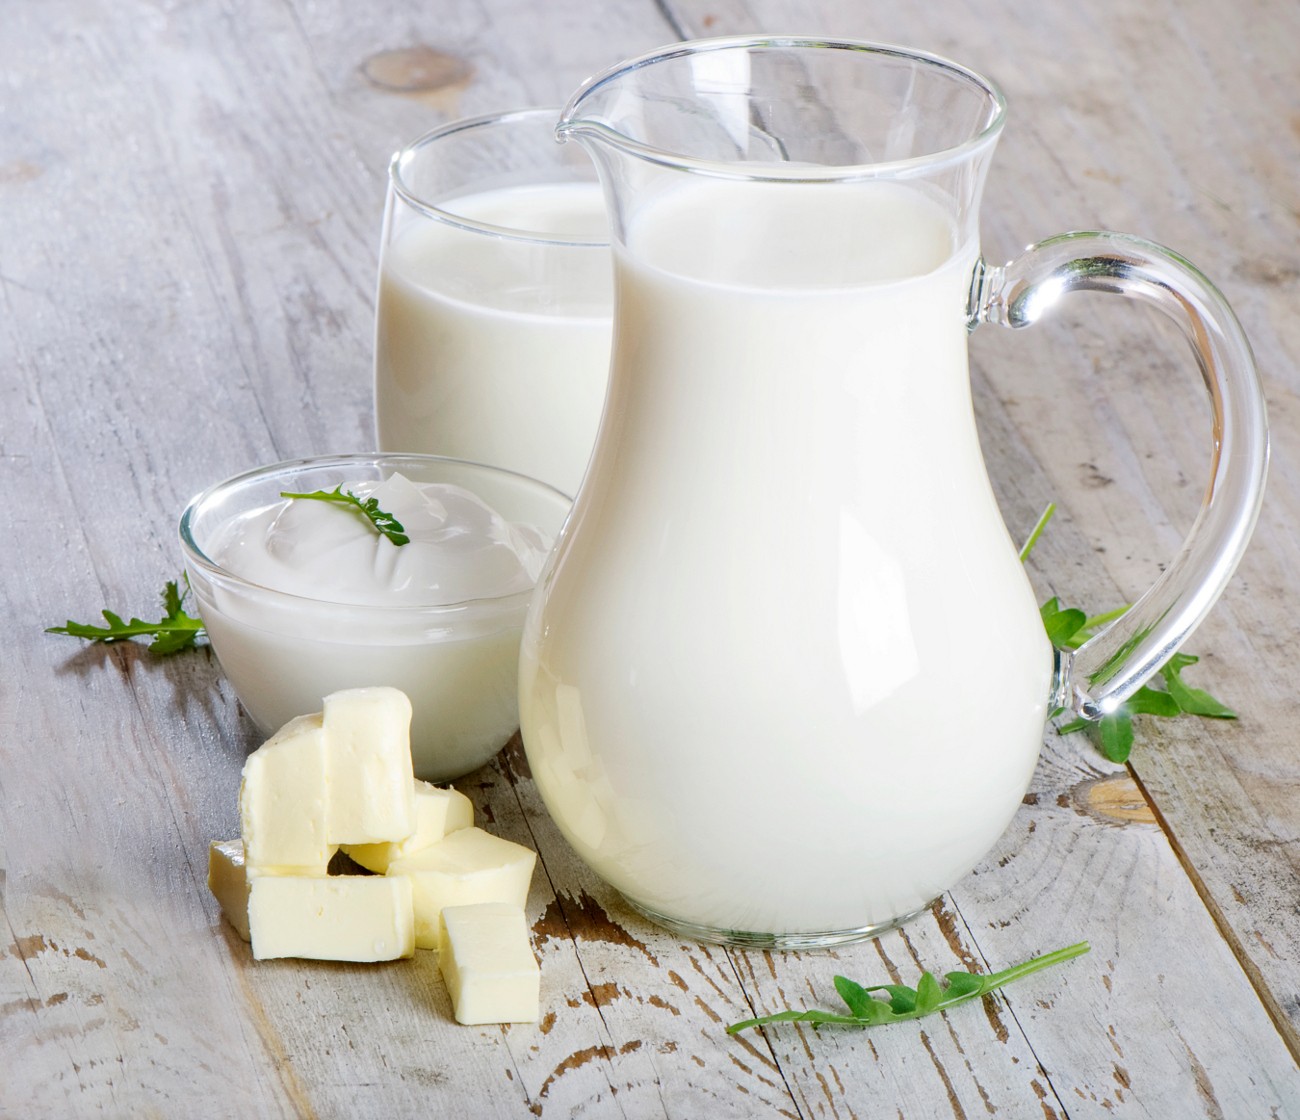 Chế phẩm từ sữa rất có lợi cho sức khỏe